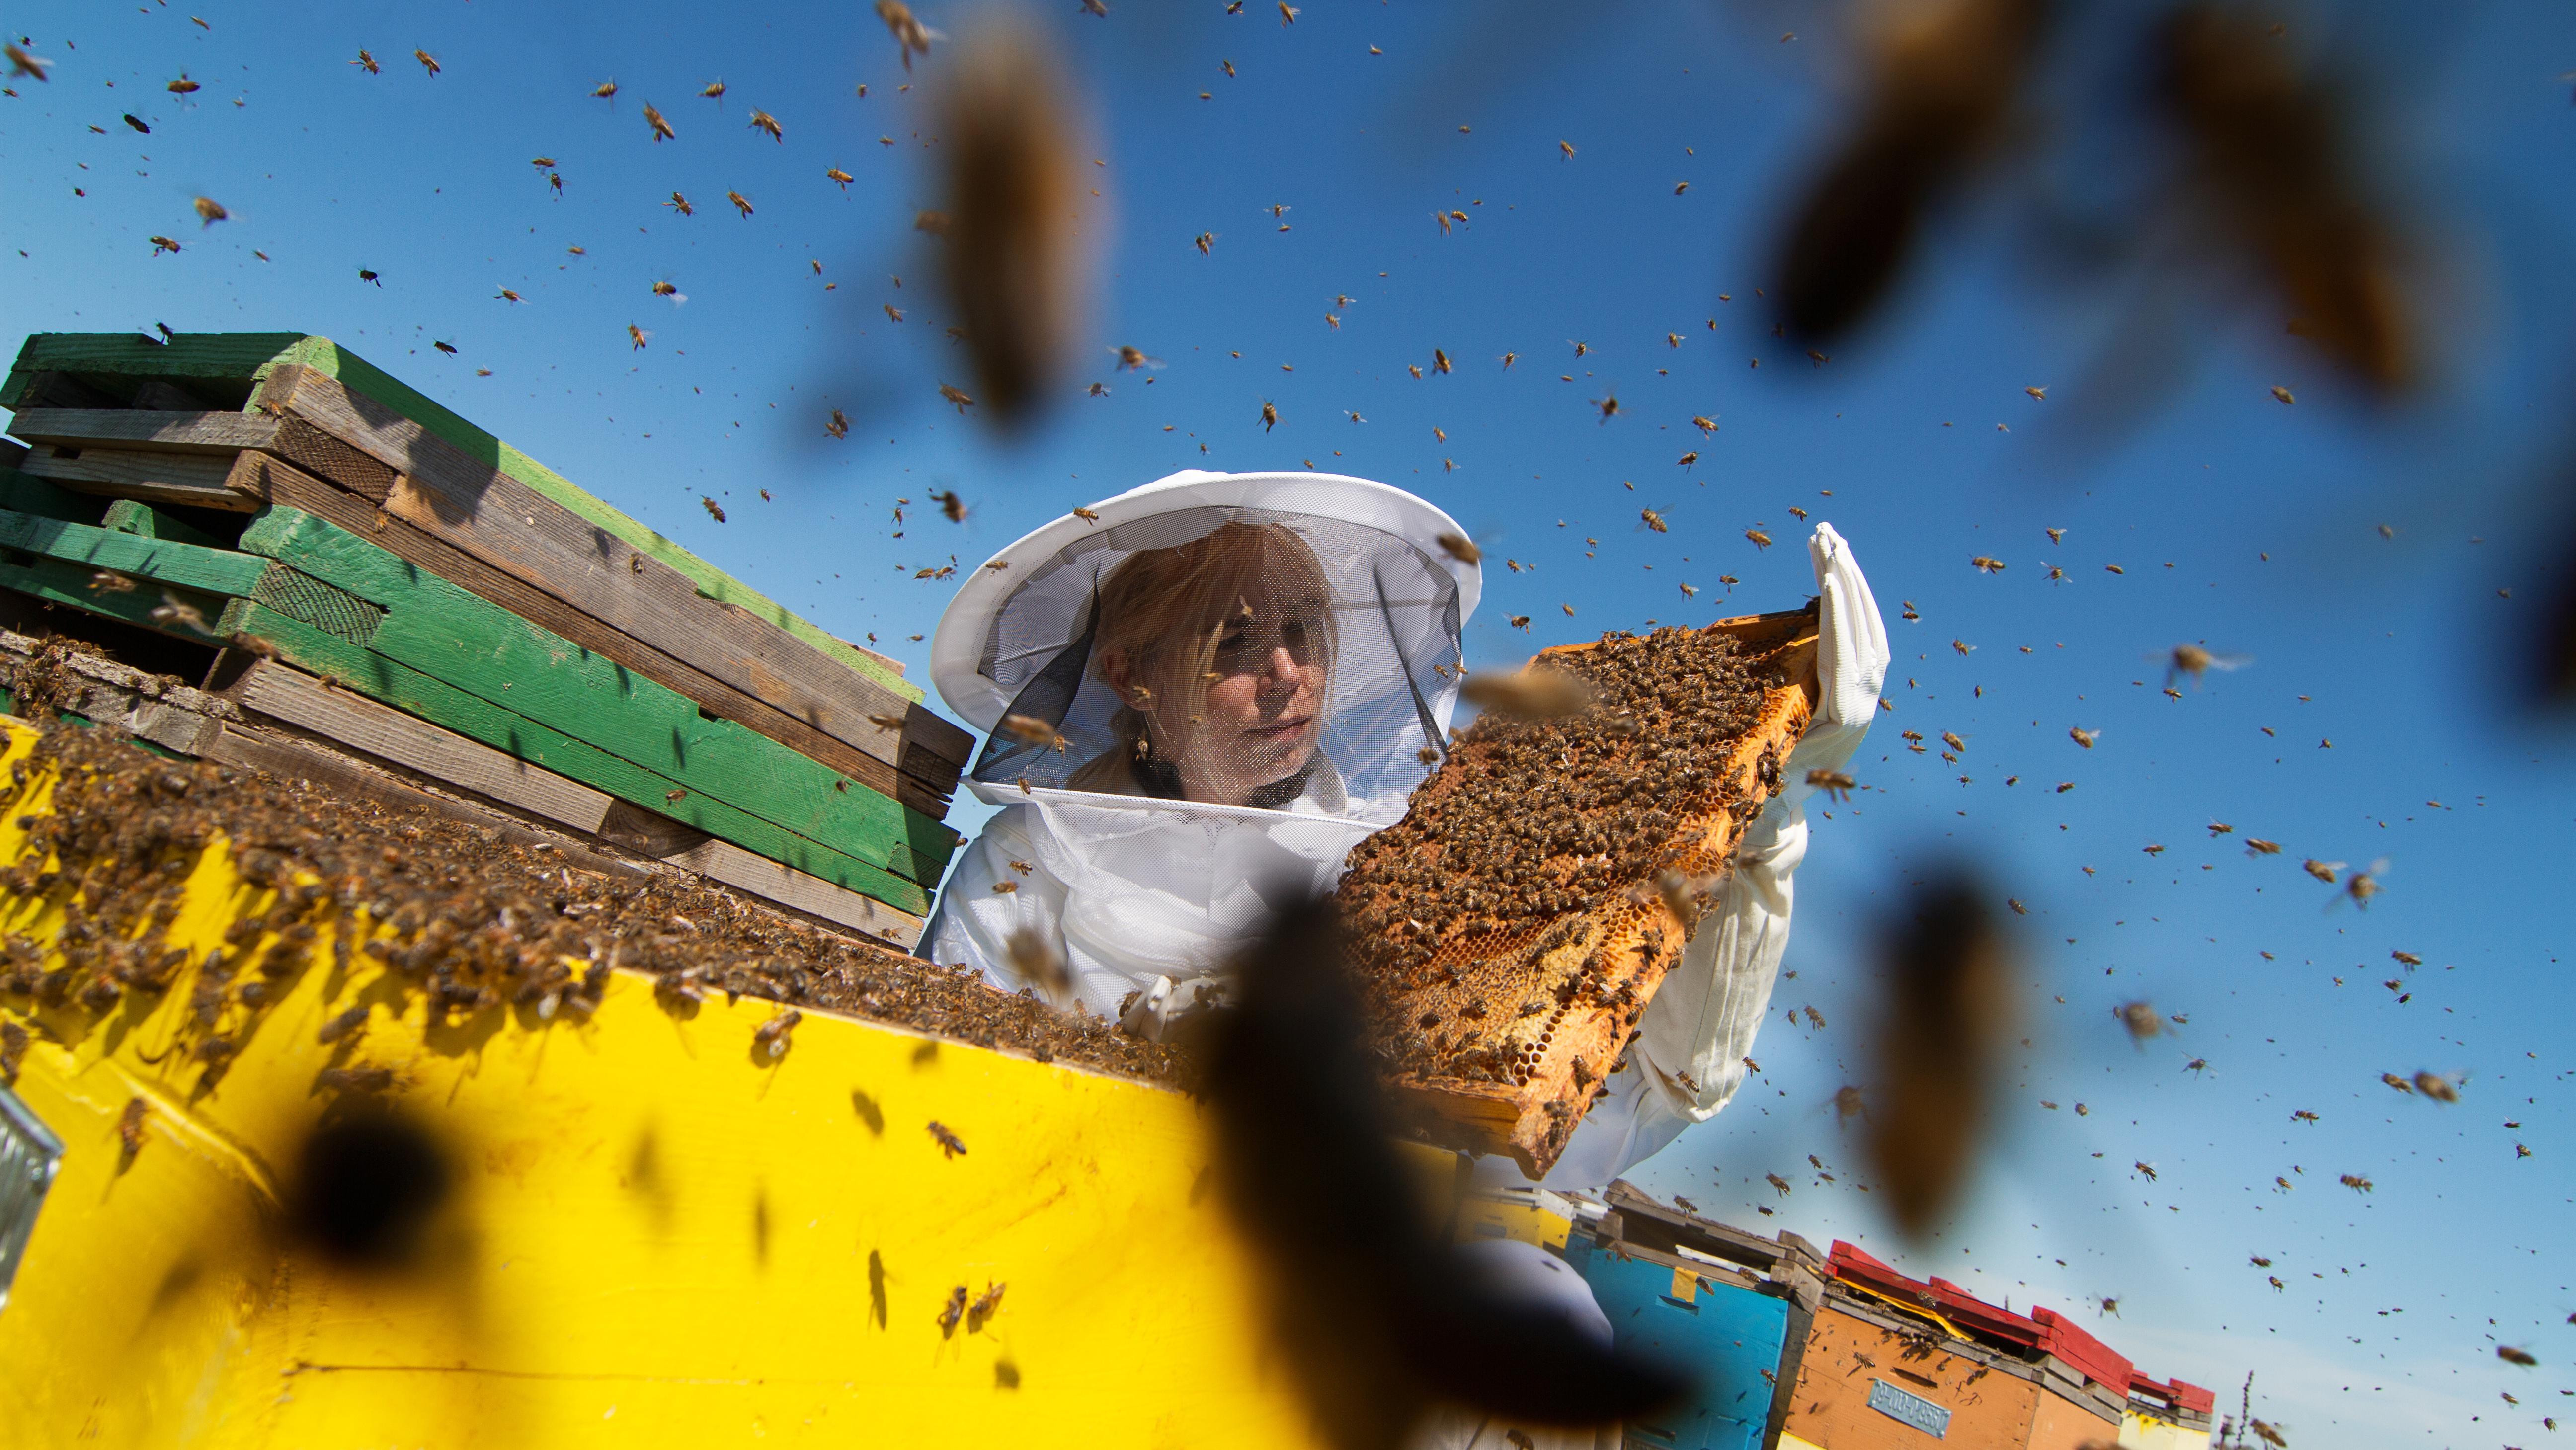 Gestreckt, billig, industriell: Chinesischer Honig vs. heimische Imker